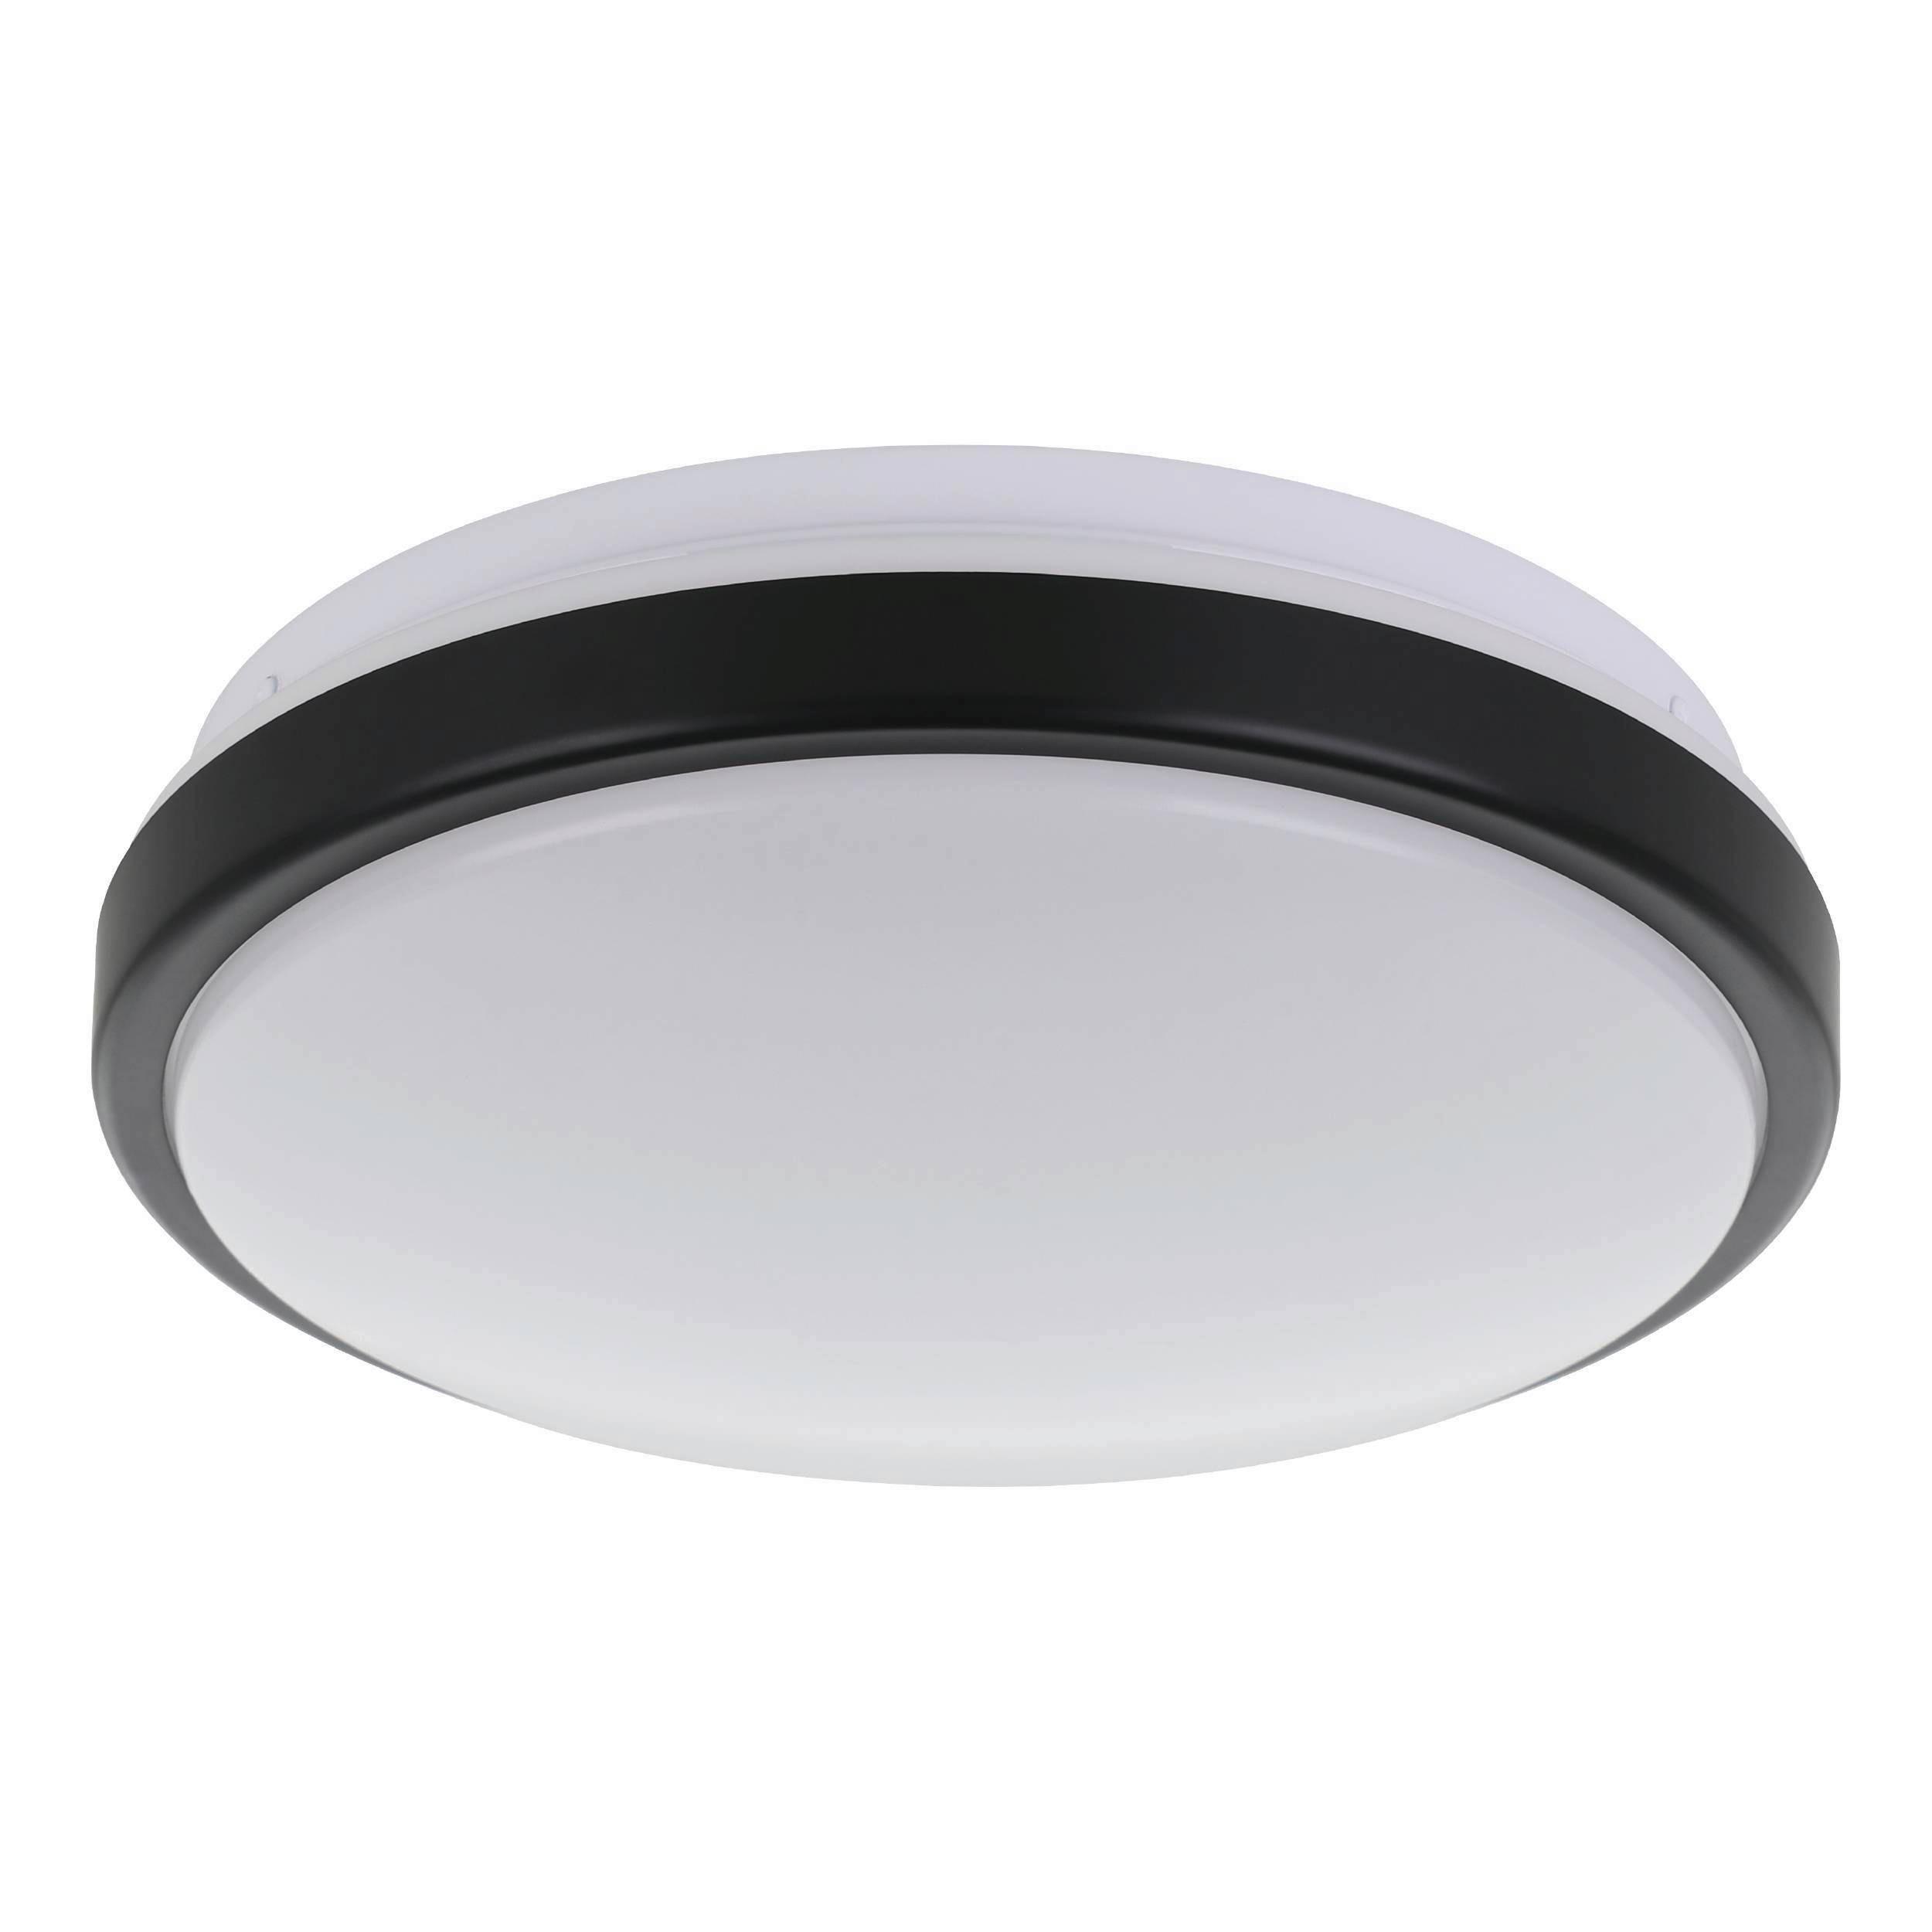 LED-Deckenleuchte Lezuza Ø 24,5 cm Schwarz/Weiß - Schwarz/Weiß, Basics, Kunststoff/Metall (24,5/9cm) - Eglo